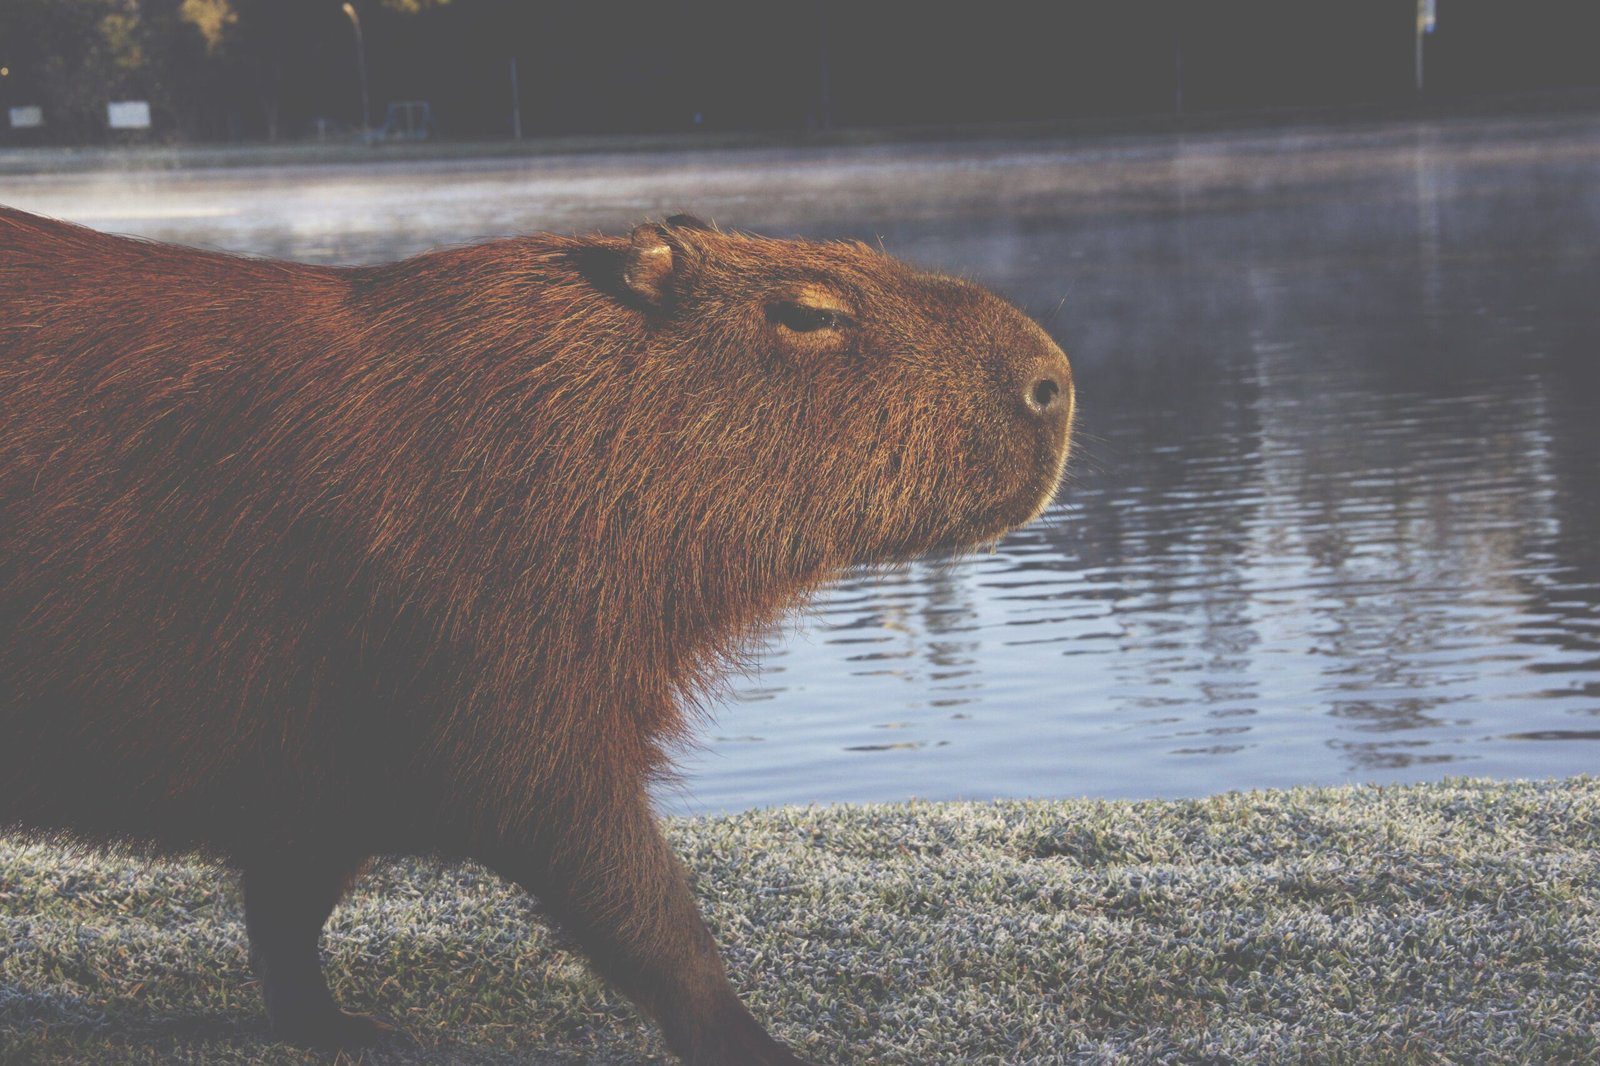 Where to Buy a Capybara